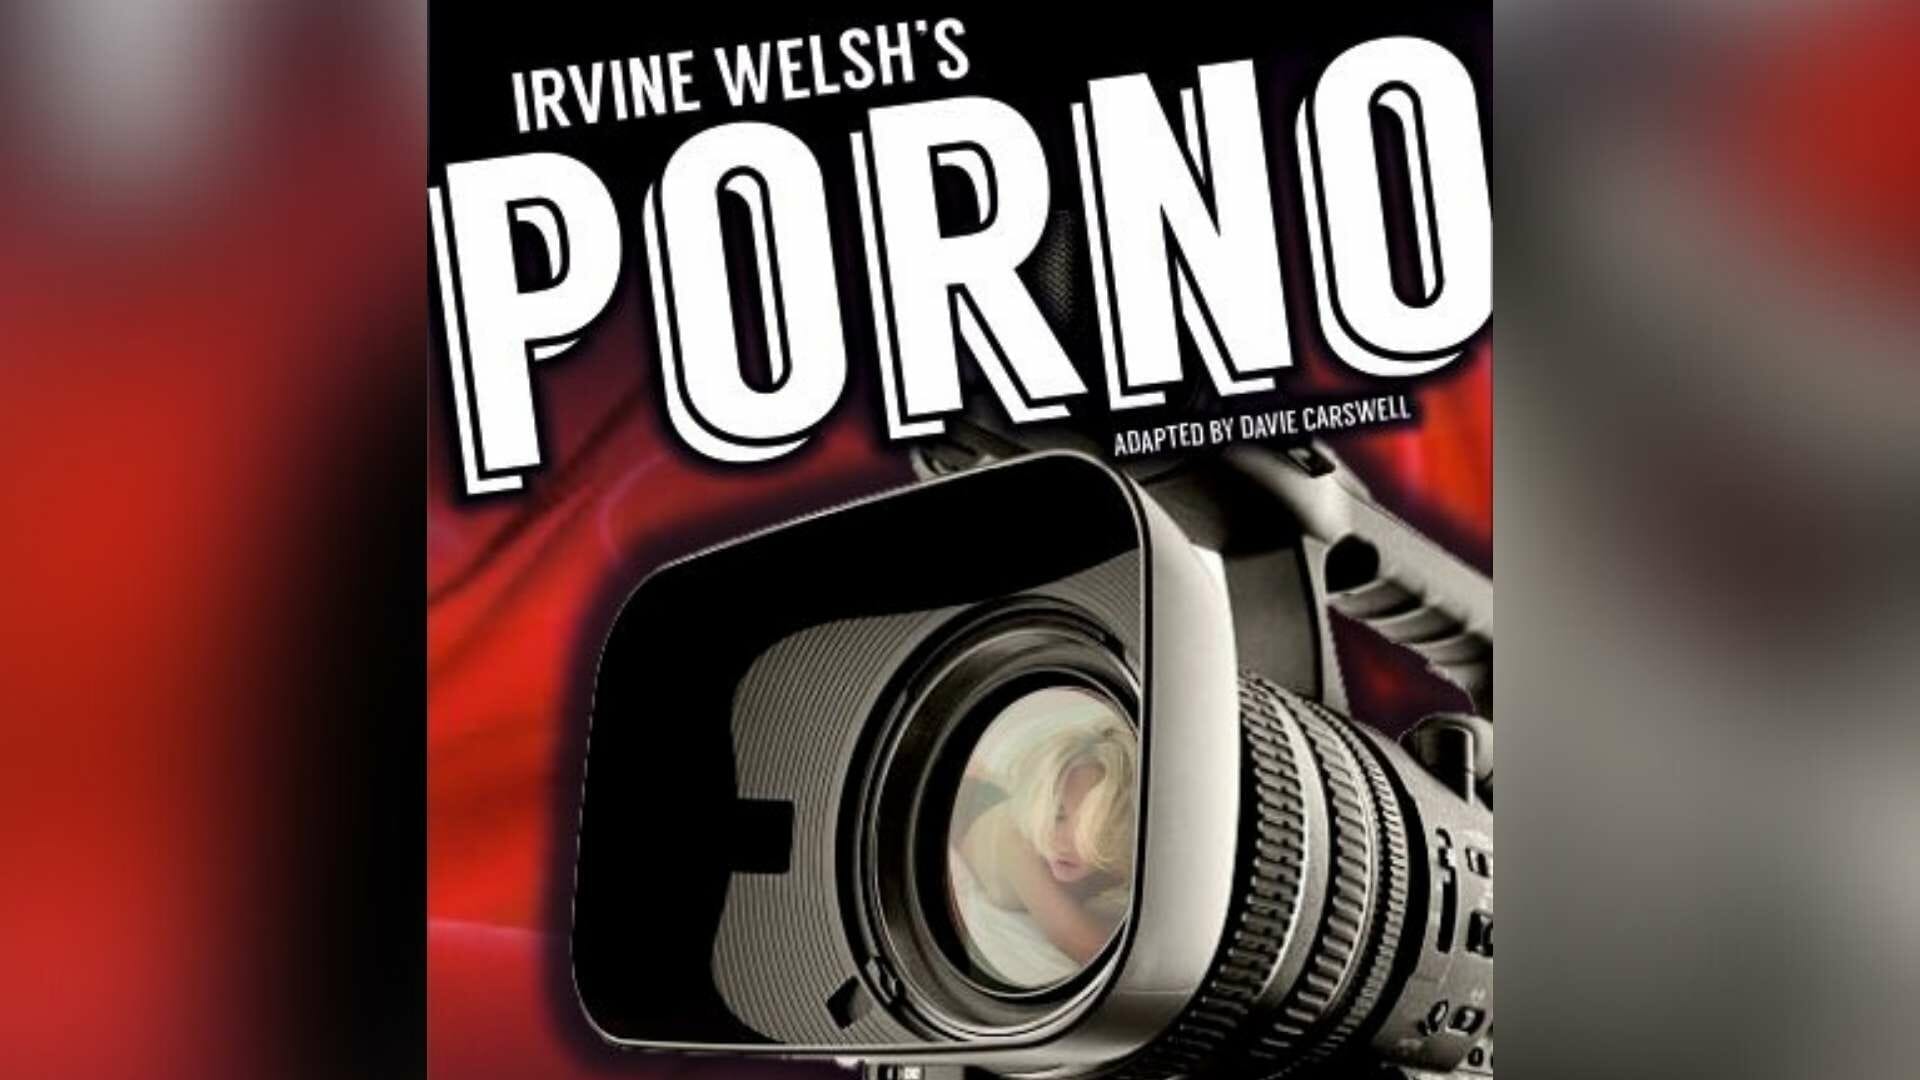 Irvine Welshs Porno at Edinburgh Fringe